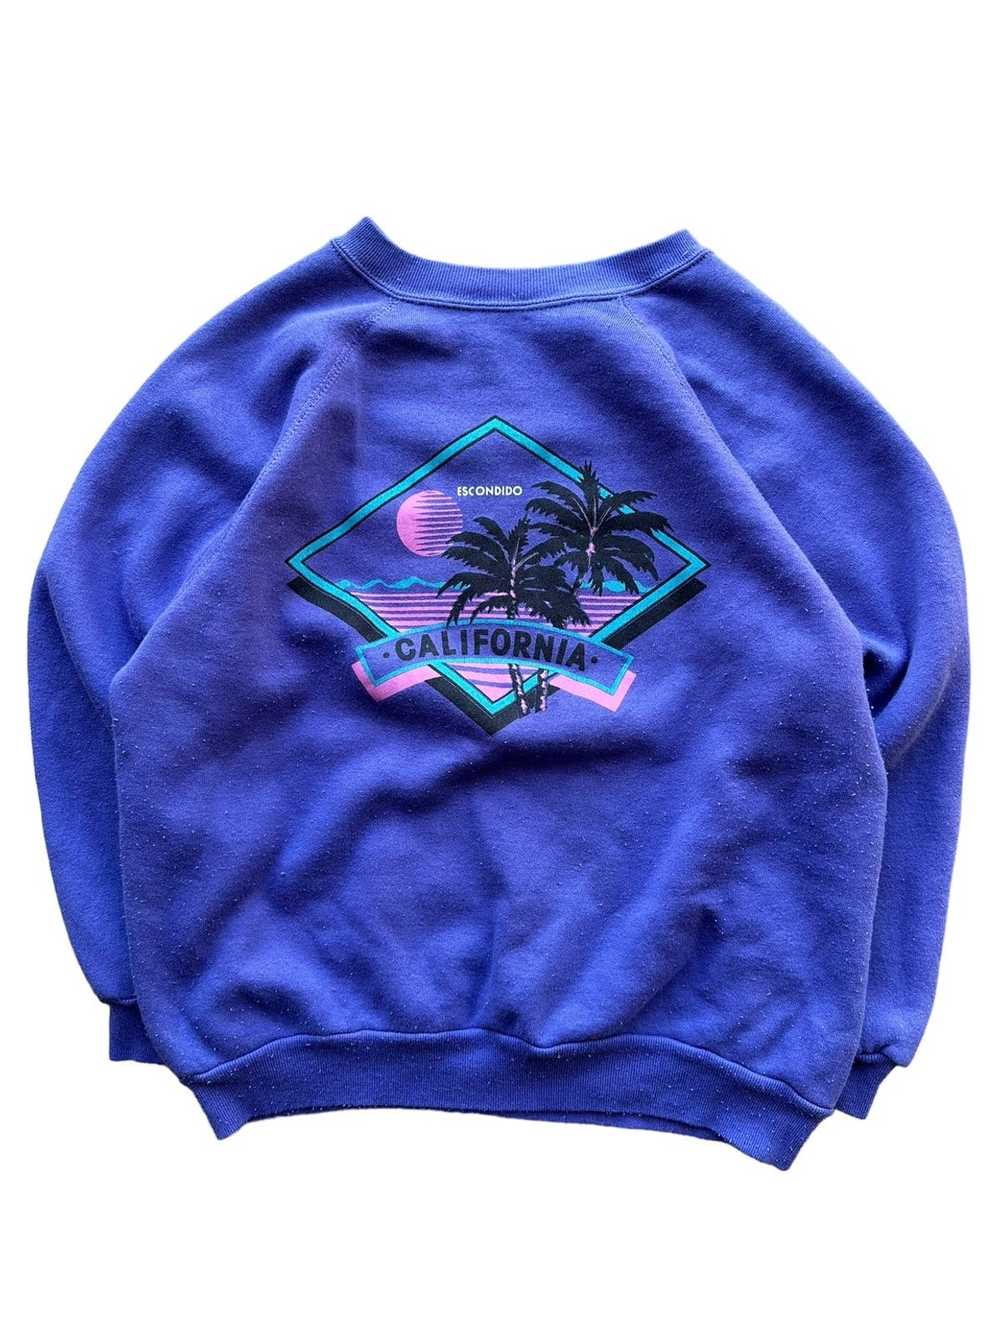 Vintage Vintage 90’s California Sweatshirt - image 1